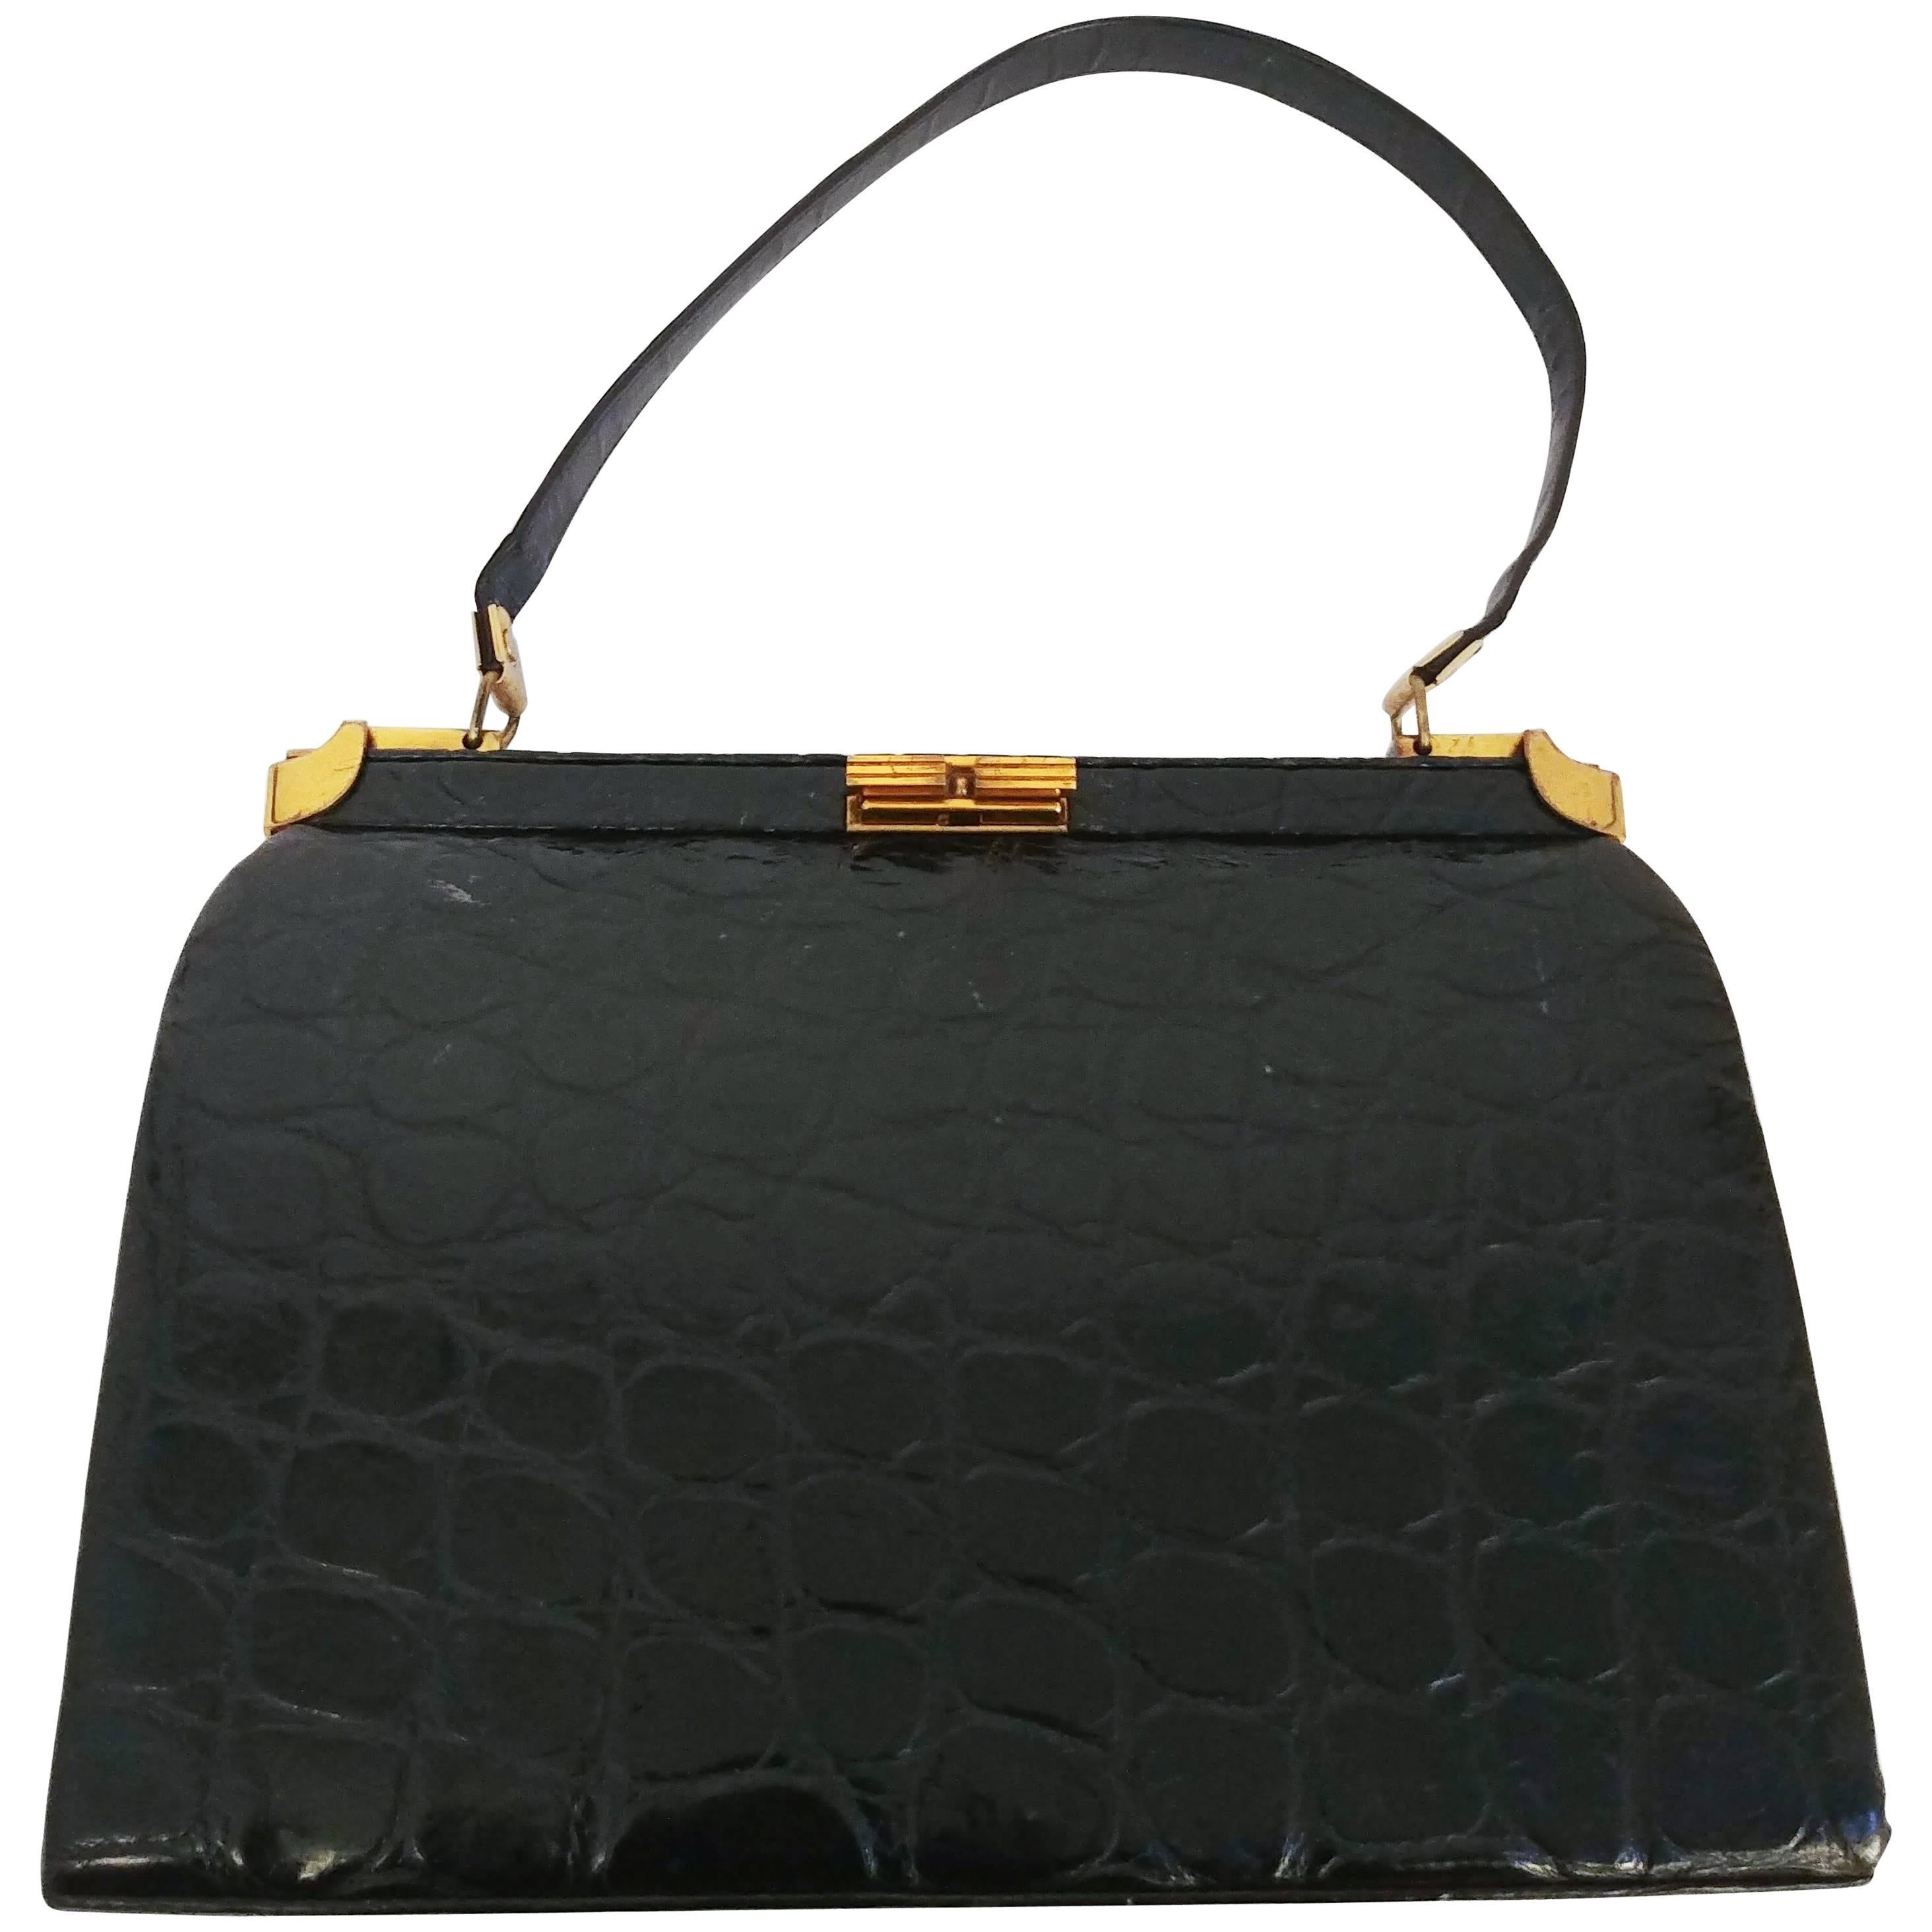 1950s Black Alligator Handbag